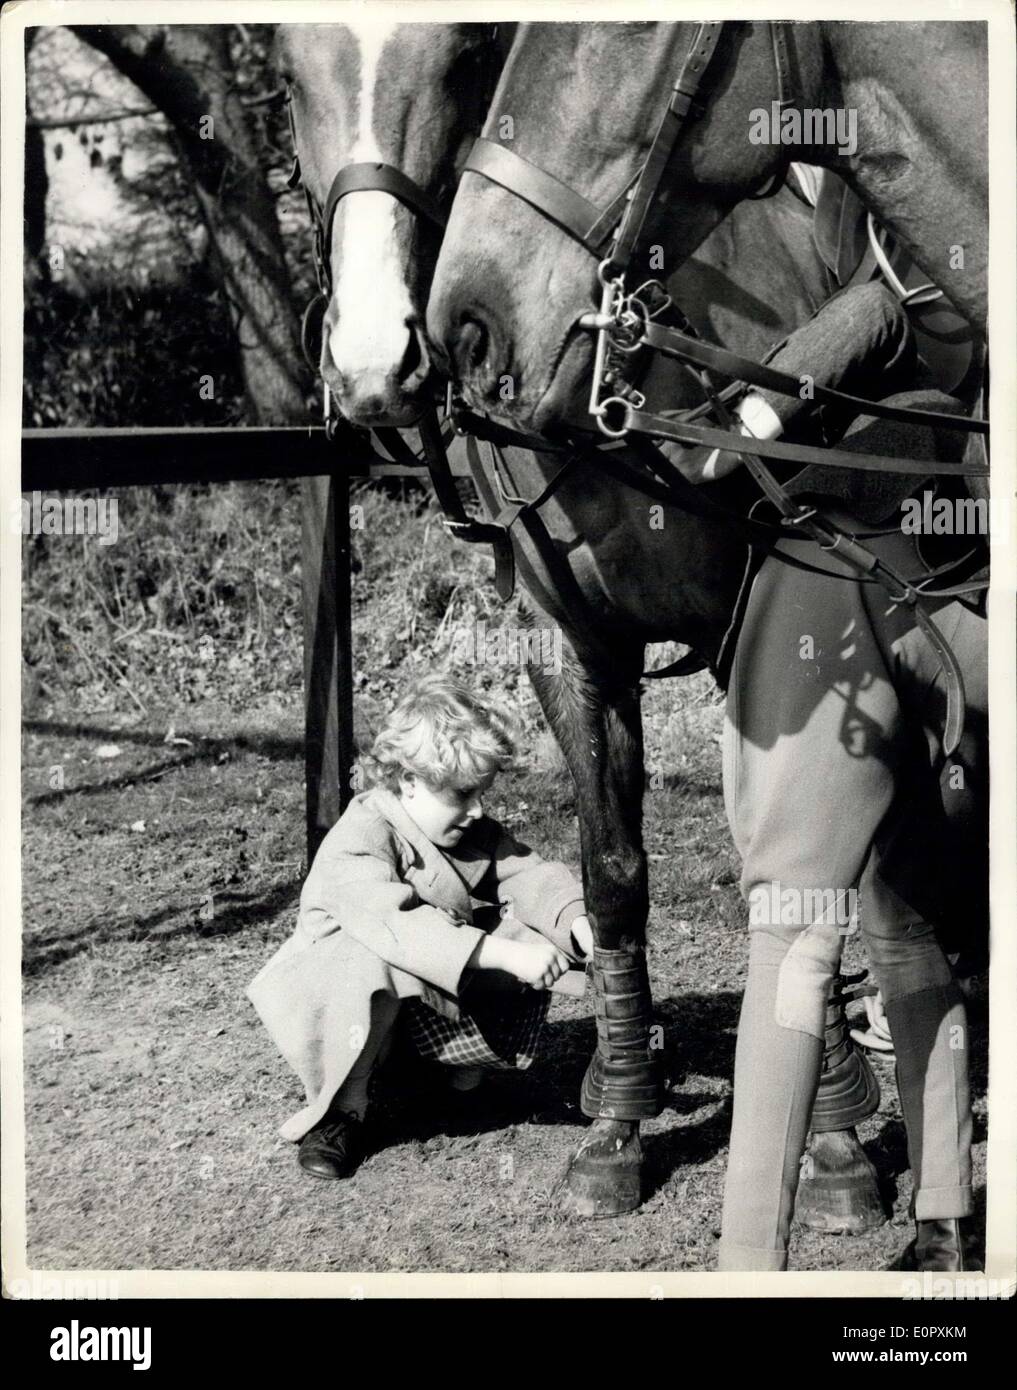 apr-13-1957-13-4-57-princess-anne-helps-with-the-polo-ponies-princess-E0PXKM.jpg